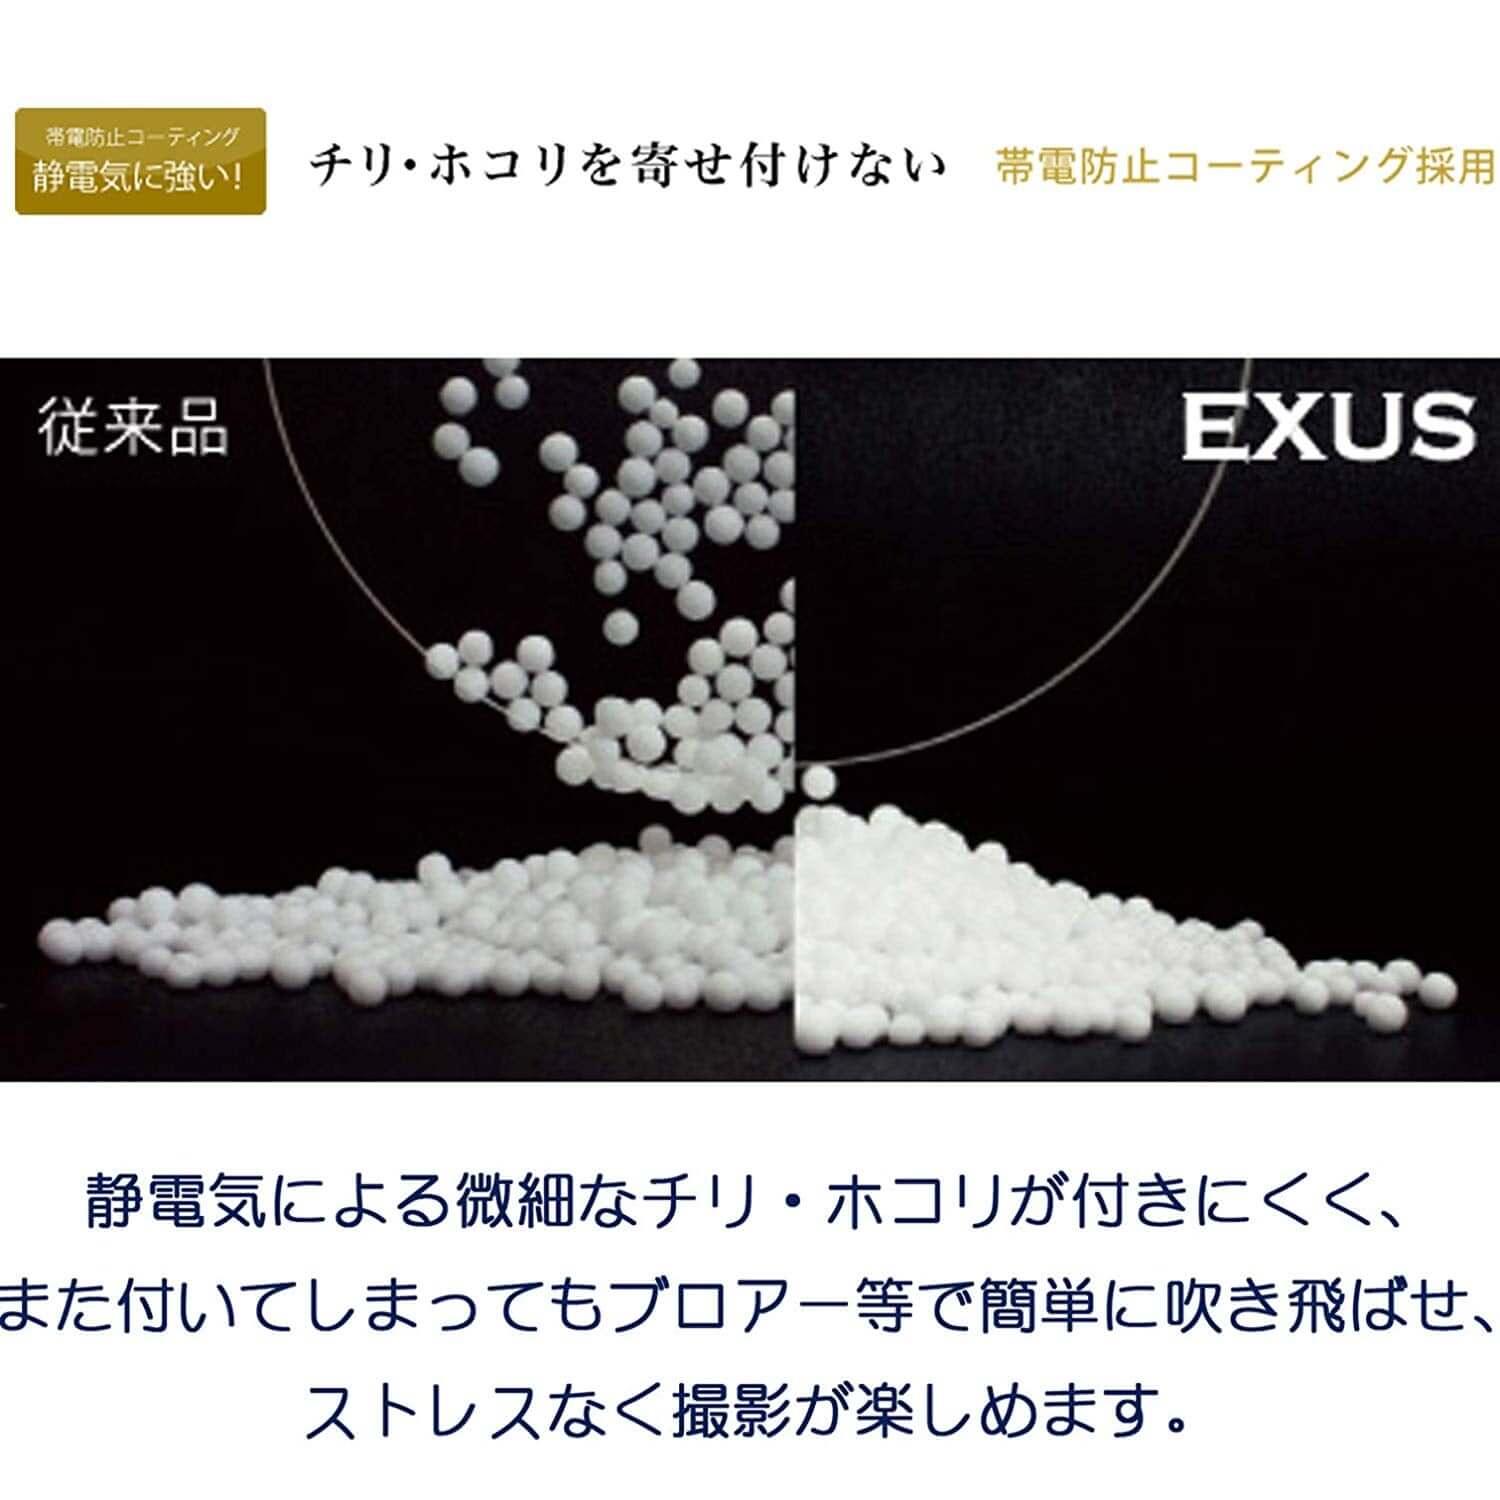 EXUS レンズプロテクト 43mm